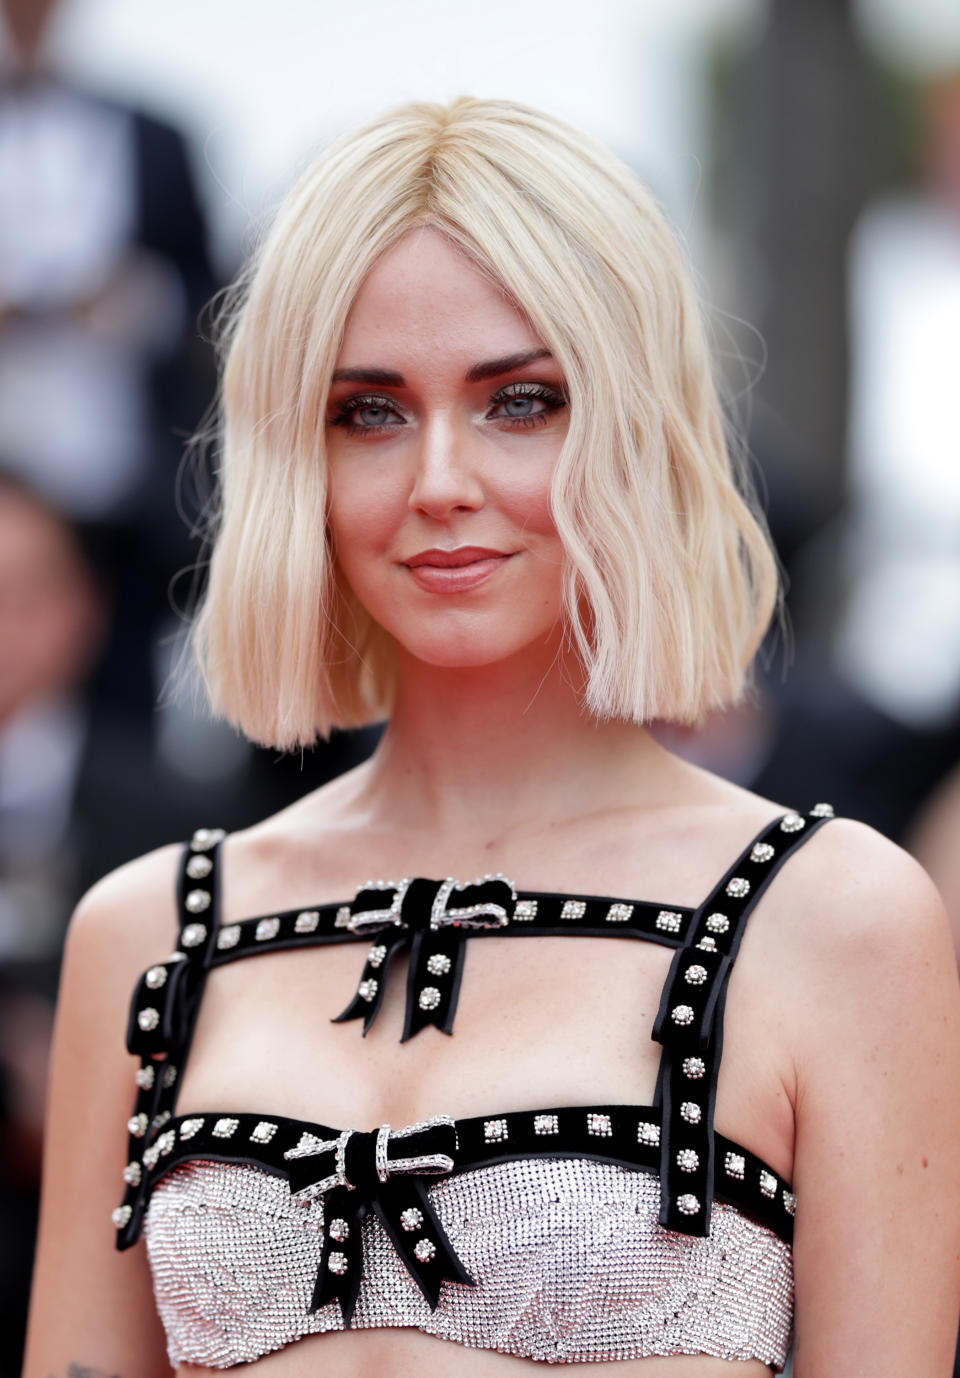 El icono de moda acaparó todas las miradas en el Festival de Cannes 2019 con su nuevo corte de pelo. Se trataba de un falso <em>bob</em>, ya que en los días posteriores volvió a lucir su melena larga. (Foto: Andreas Rentz / Getty Images)